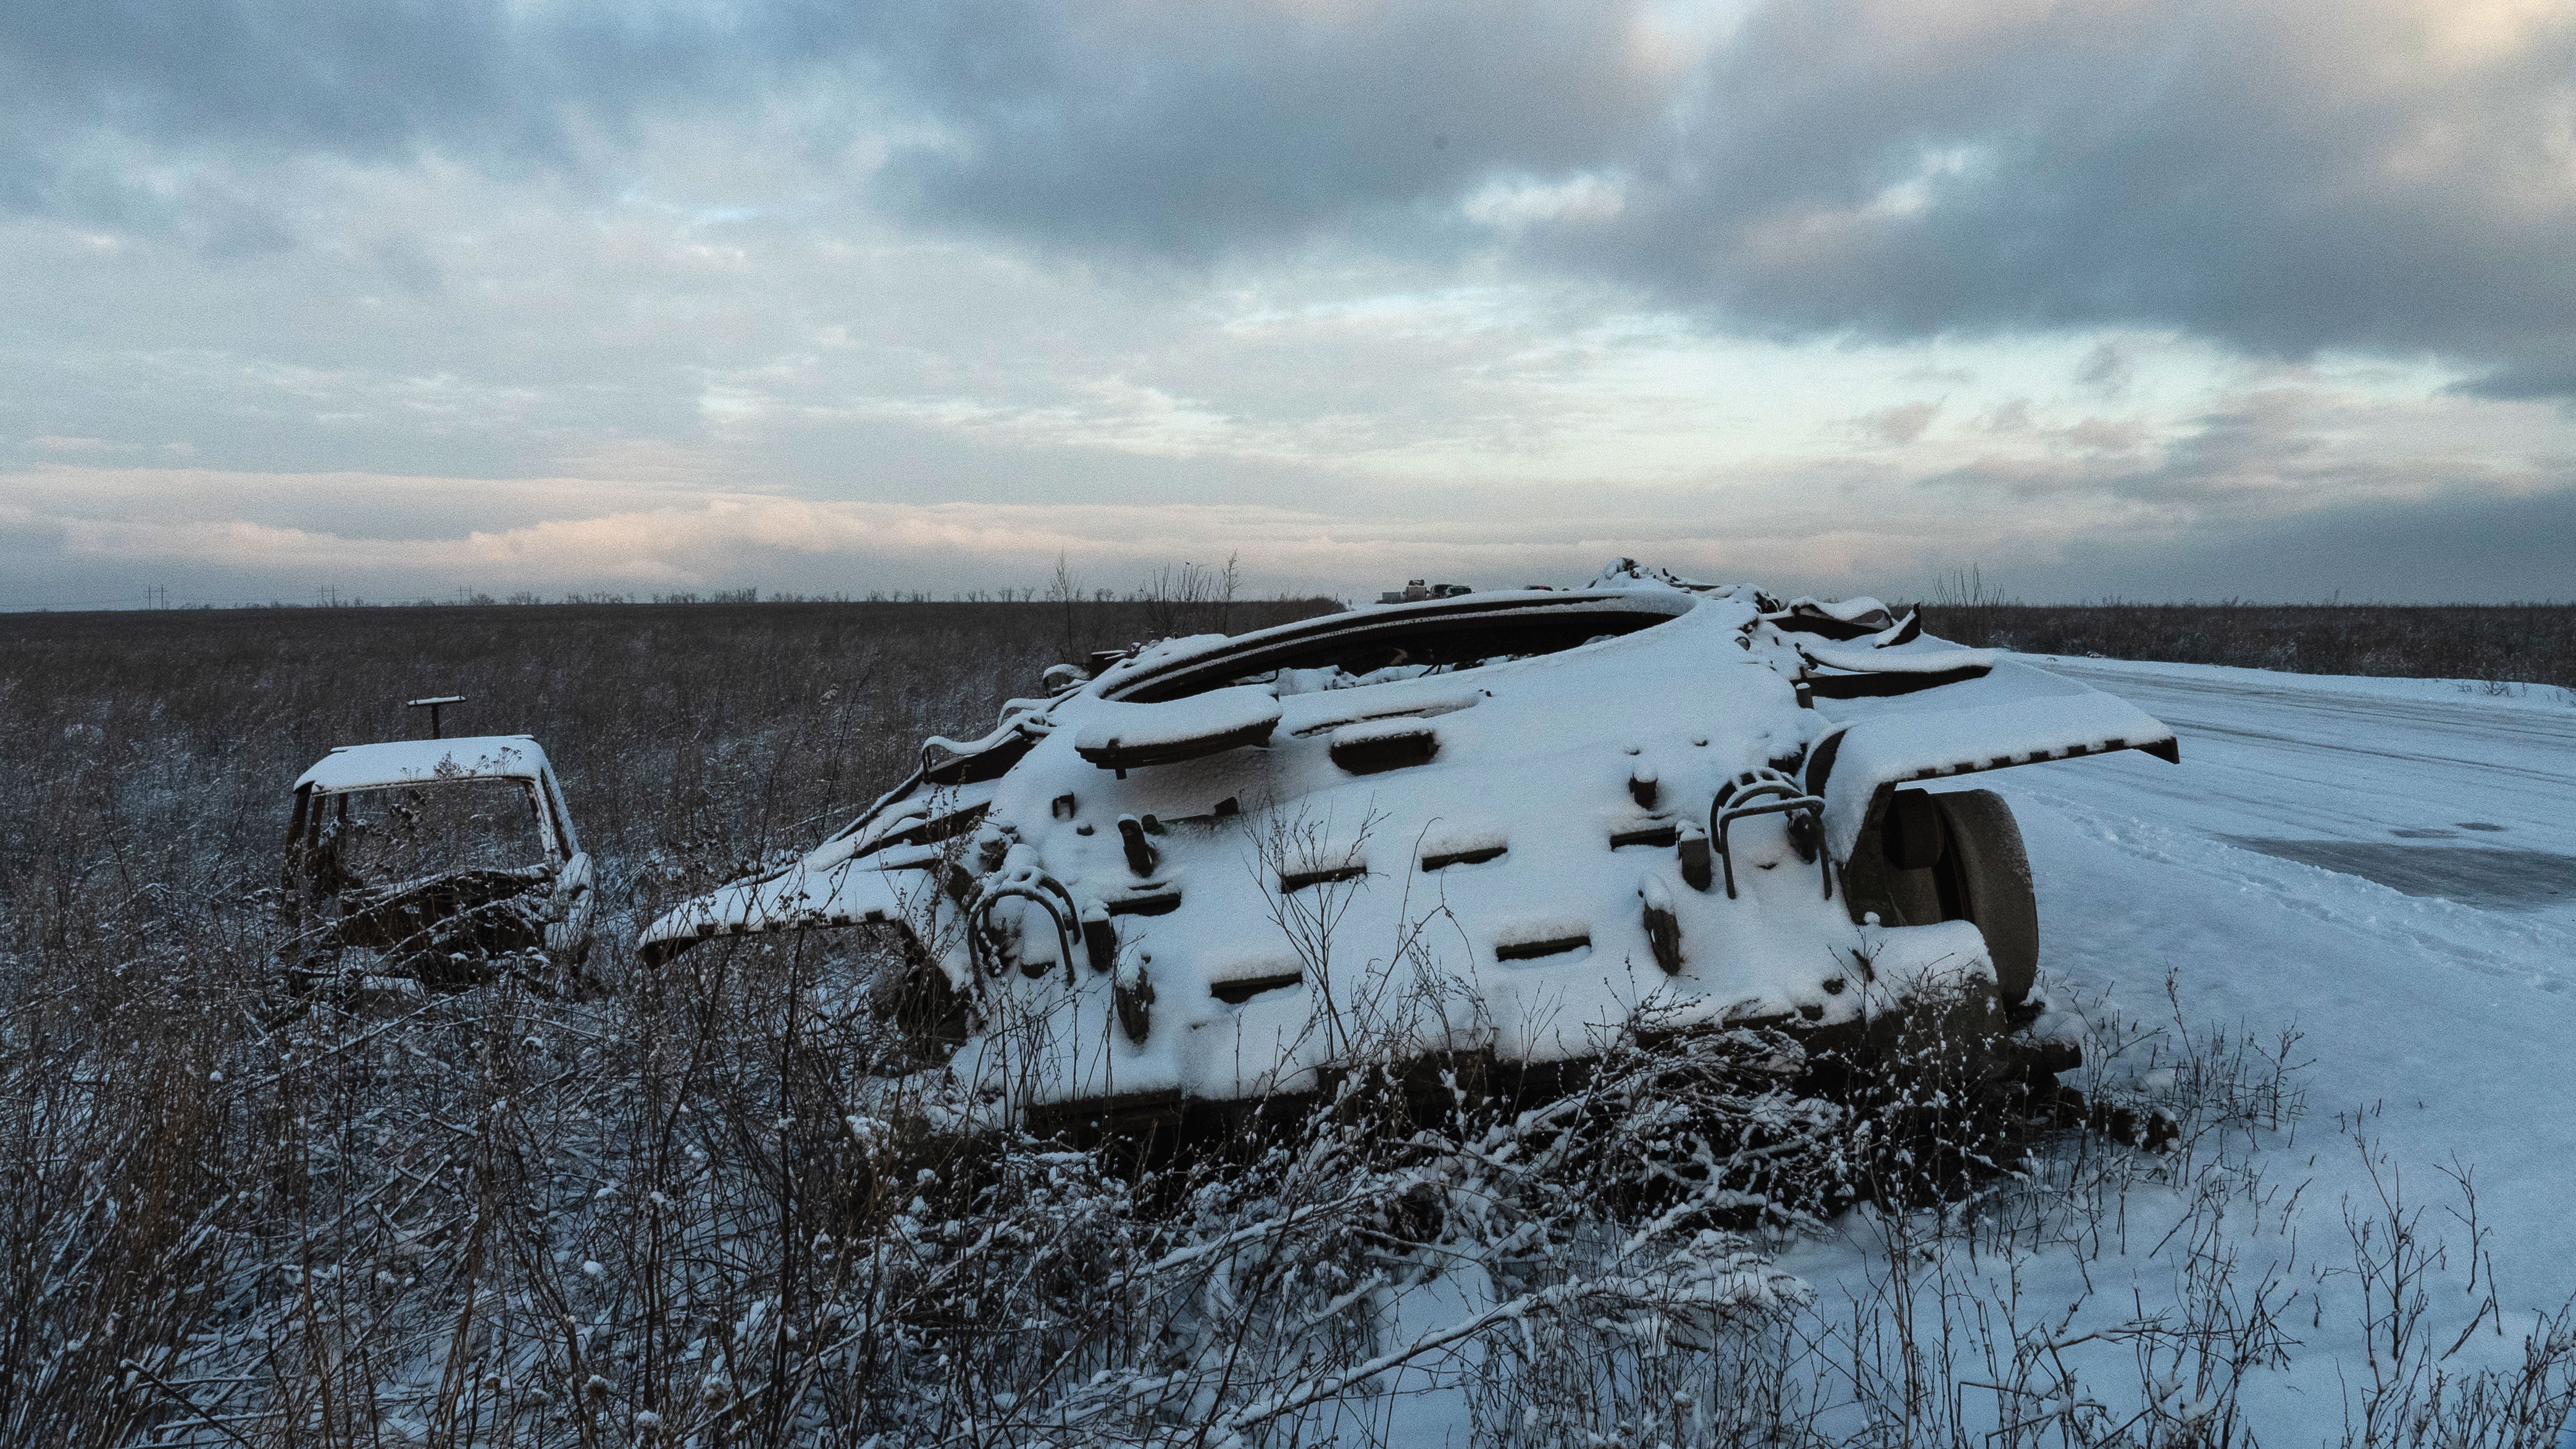 頓巴斯前線附近，白雪皚皚的路邊和鄰近的田野呈現出一片荒涼。一輛廢棄的坦克，履帶埋入雪中，像一位沉默的哨兵，見證了過去的衝突。在它旁邊，一輛遭燒毀的貨車使淒涼景象加倍，其受破壞的殘餘物銘蝕在冬景中。